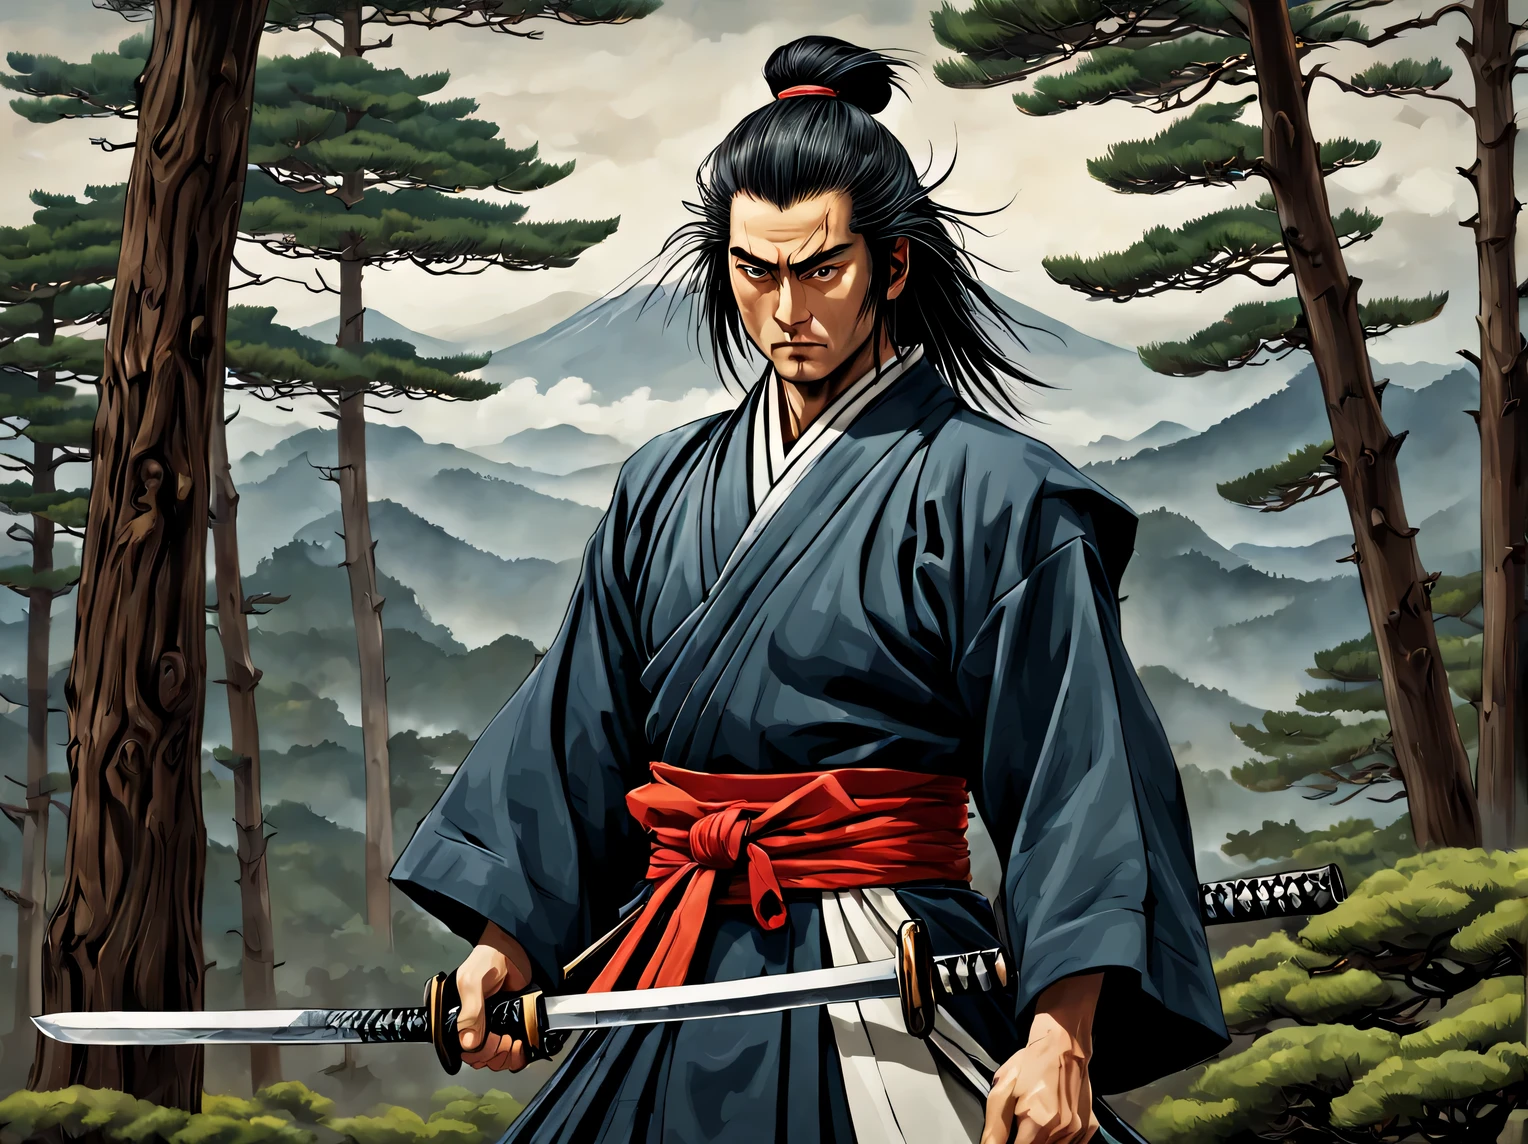 Das neuronale Netzwerk zeichnet ein Bild vor dem Hintergrund des Fuji und japanischer Kiefern, heroische Kreatur - stolzer Samurai, hält ein Samurai-Katana-Schwert, Samurai-Kleidung, schlank schlanker Körperbau, Entwickelte Muskeln, offenes Haar, hohe Detailgenauigkeit, Klarheit 32 Tausend., Eine hohe Auflösung, -bit Farbtiefe, (Mark Rayden: 1.1155), (Xue Wang: 1.1155), (Tu es:1.255), viele Details, schönes Bild